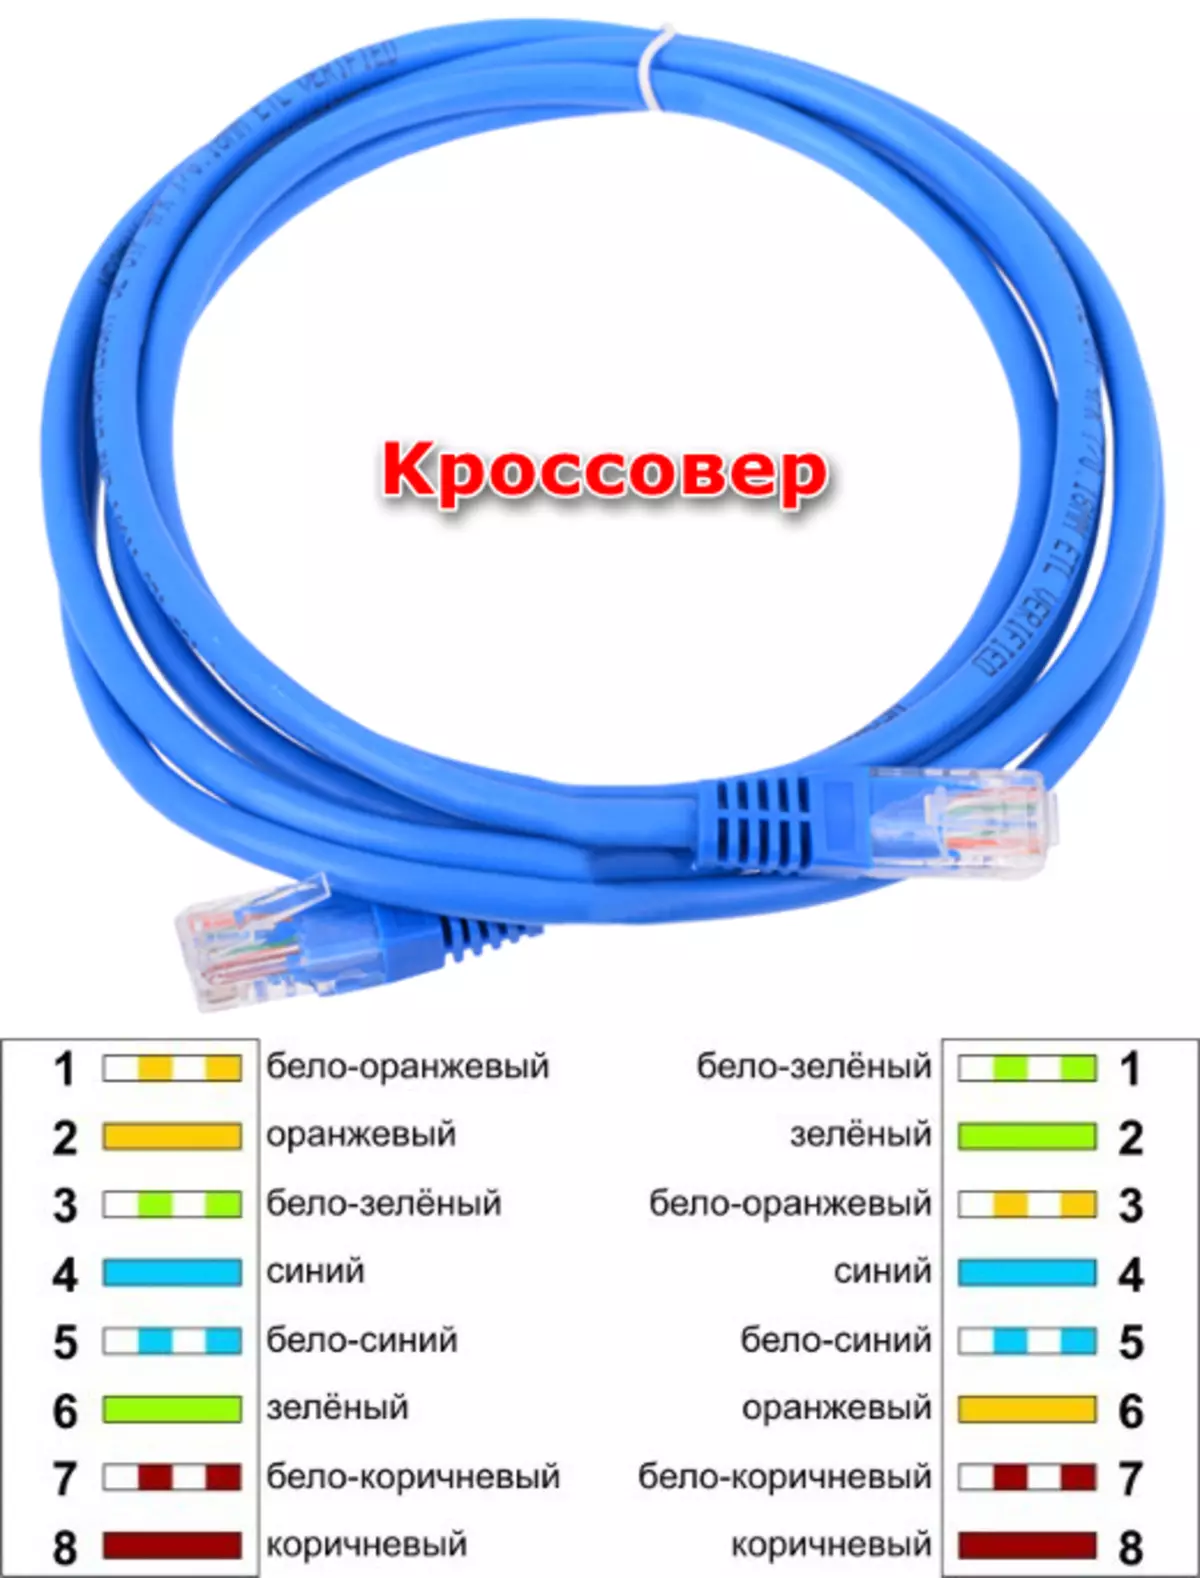 交叉连接电缆从两台计算机创建本地网络